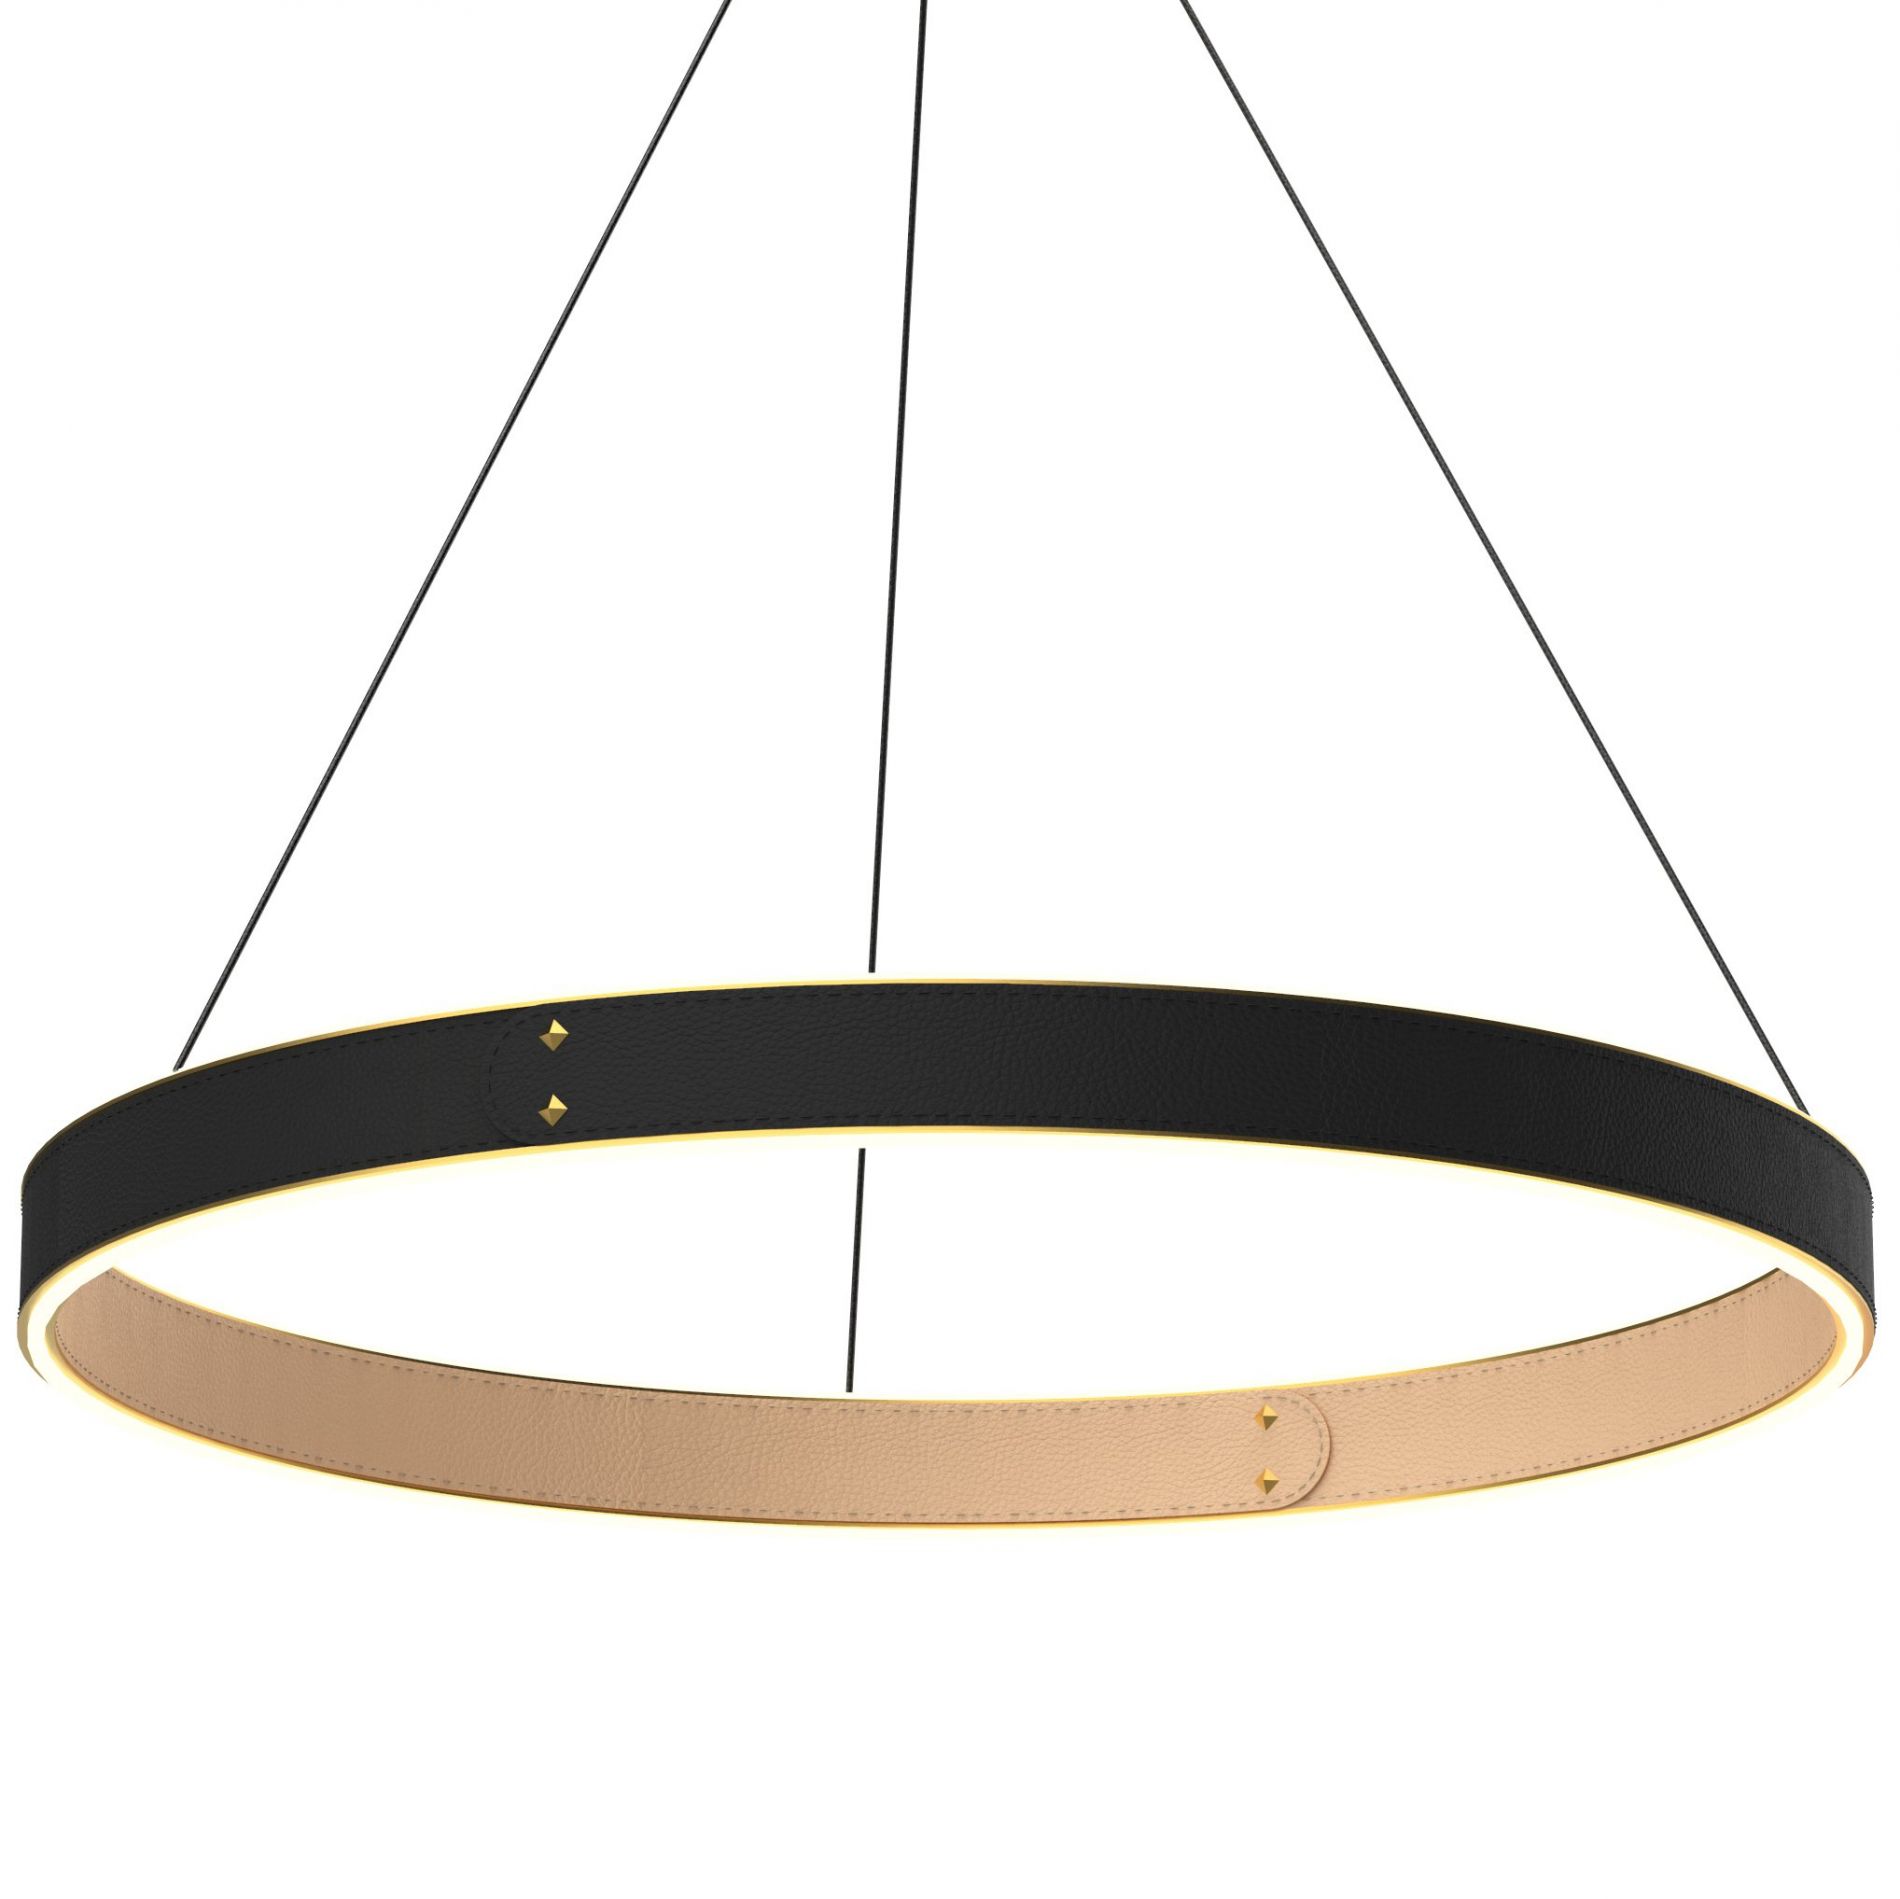 Suspension LED LEATH en cuir noir et aluminium doré